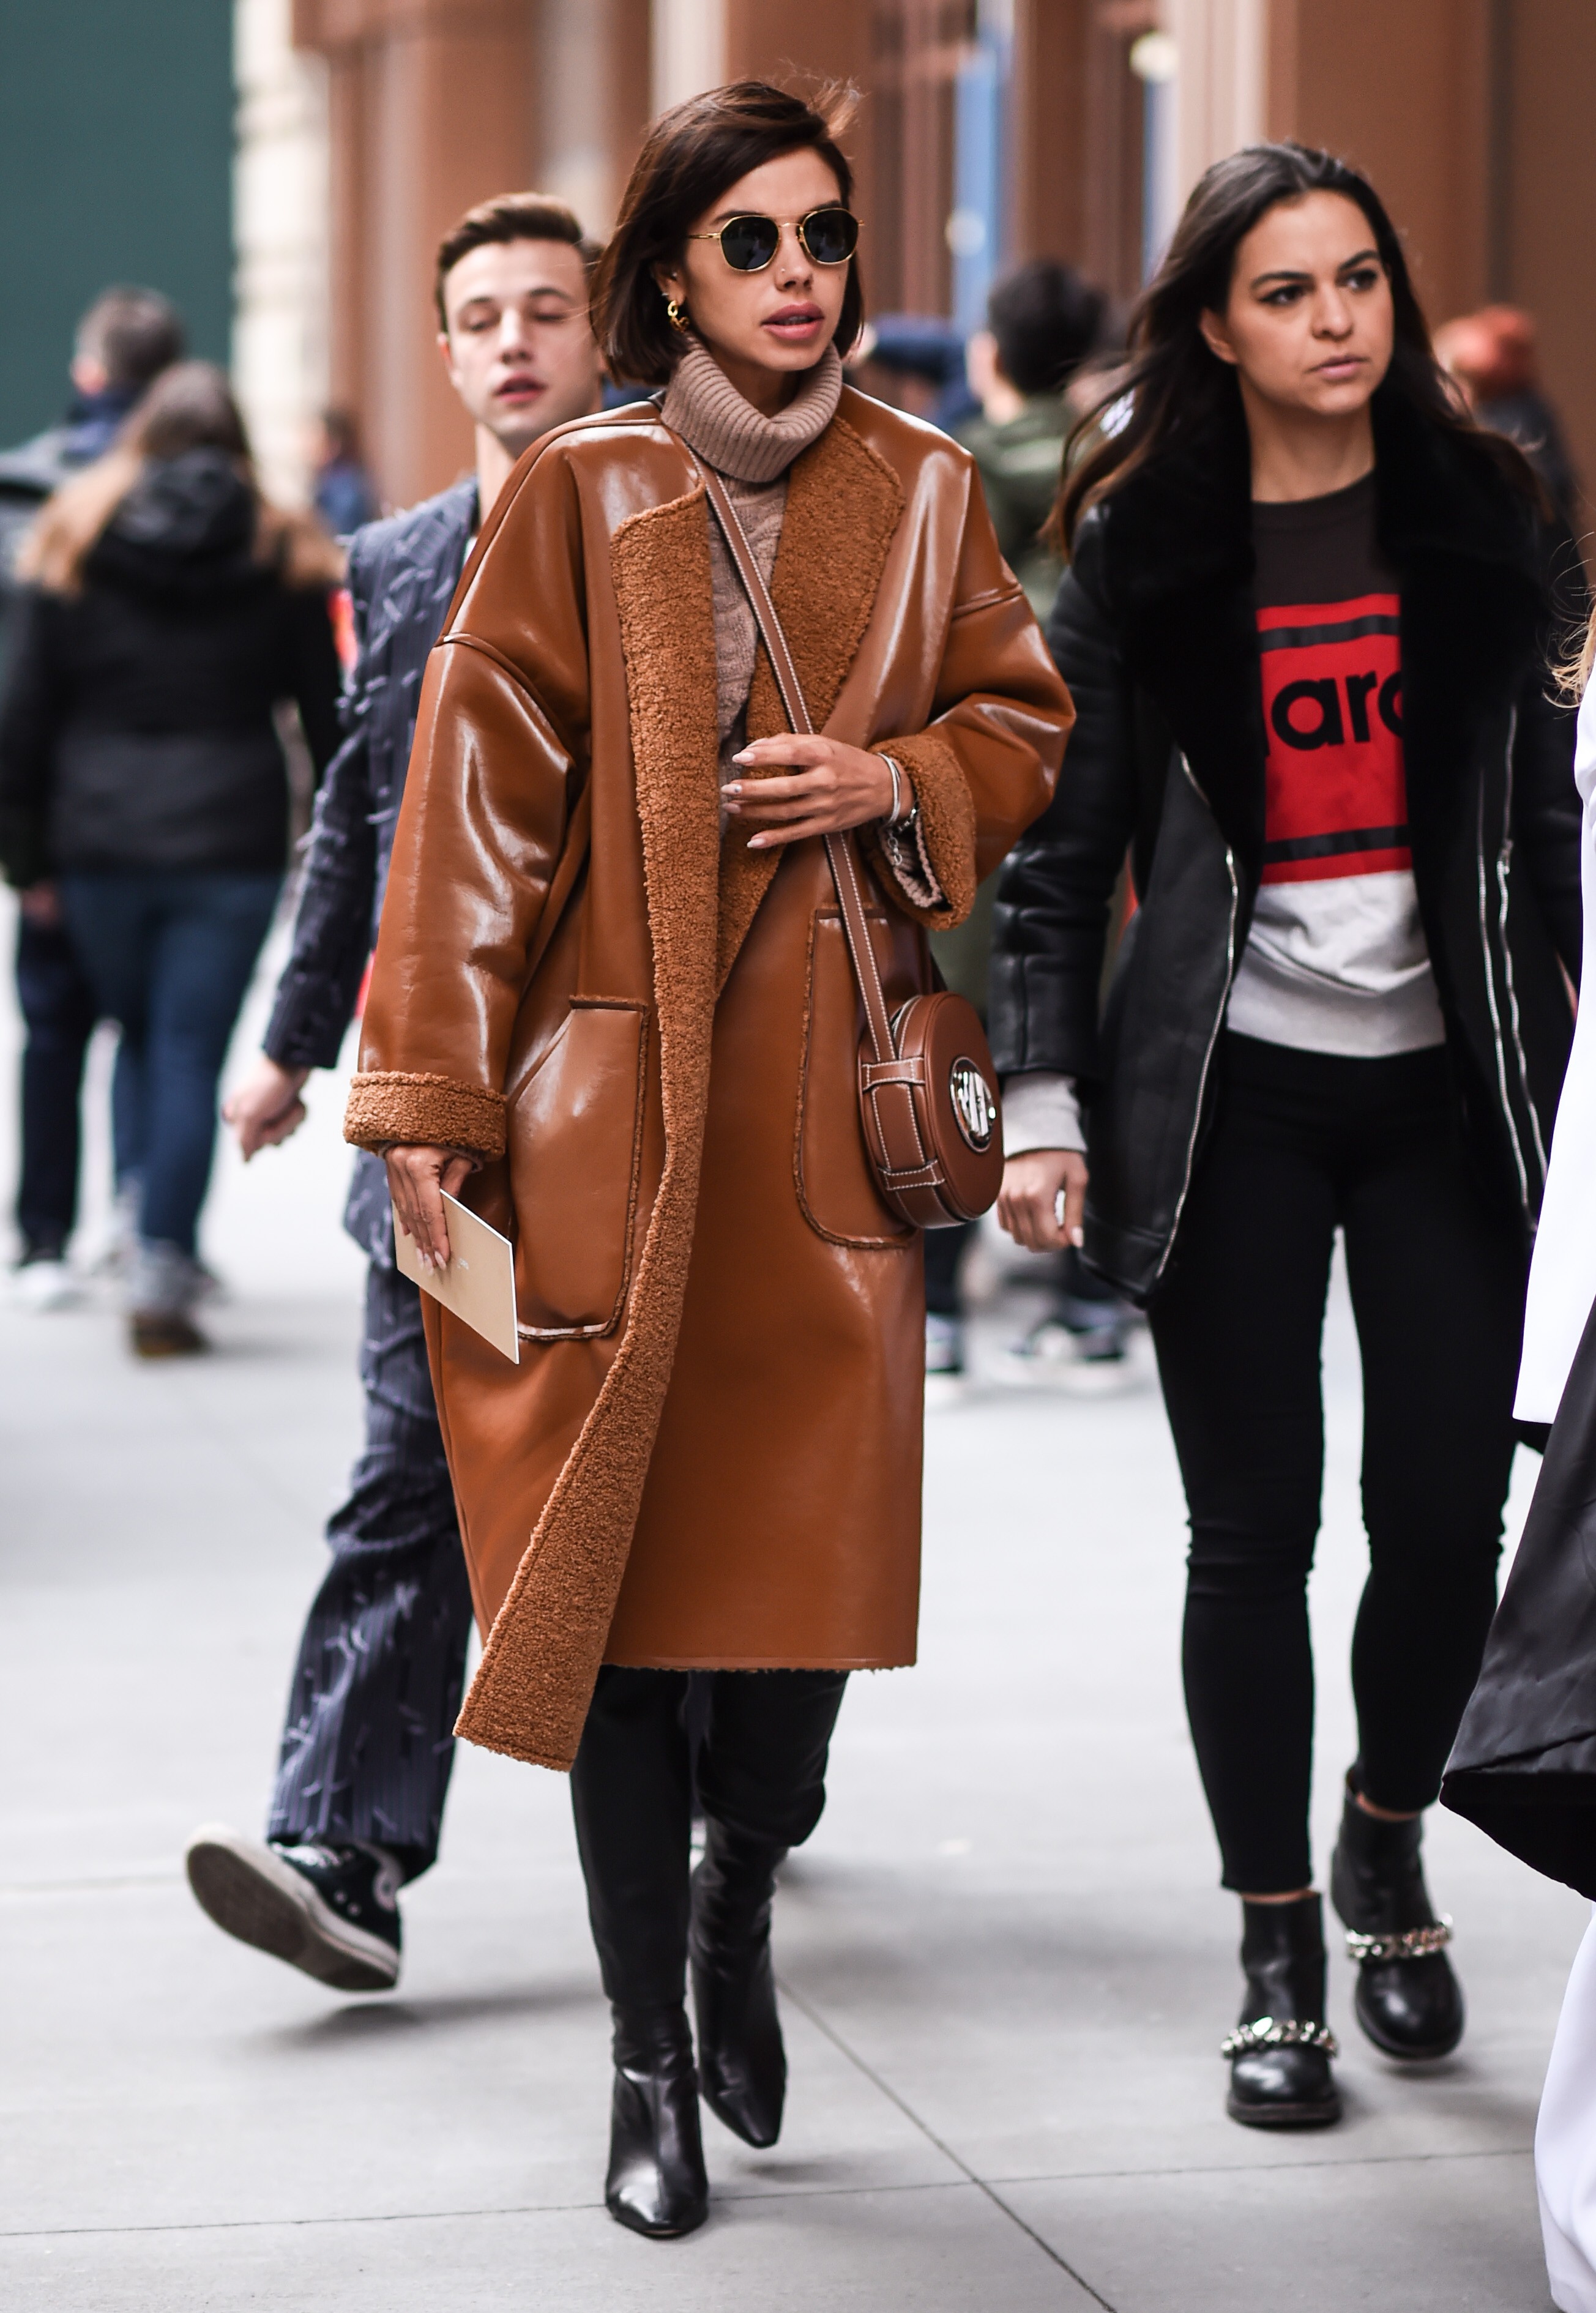 Peças clássicas em couro marrom são a aposta do street style nesta temporada (Foto: Getty Images)